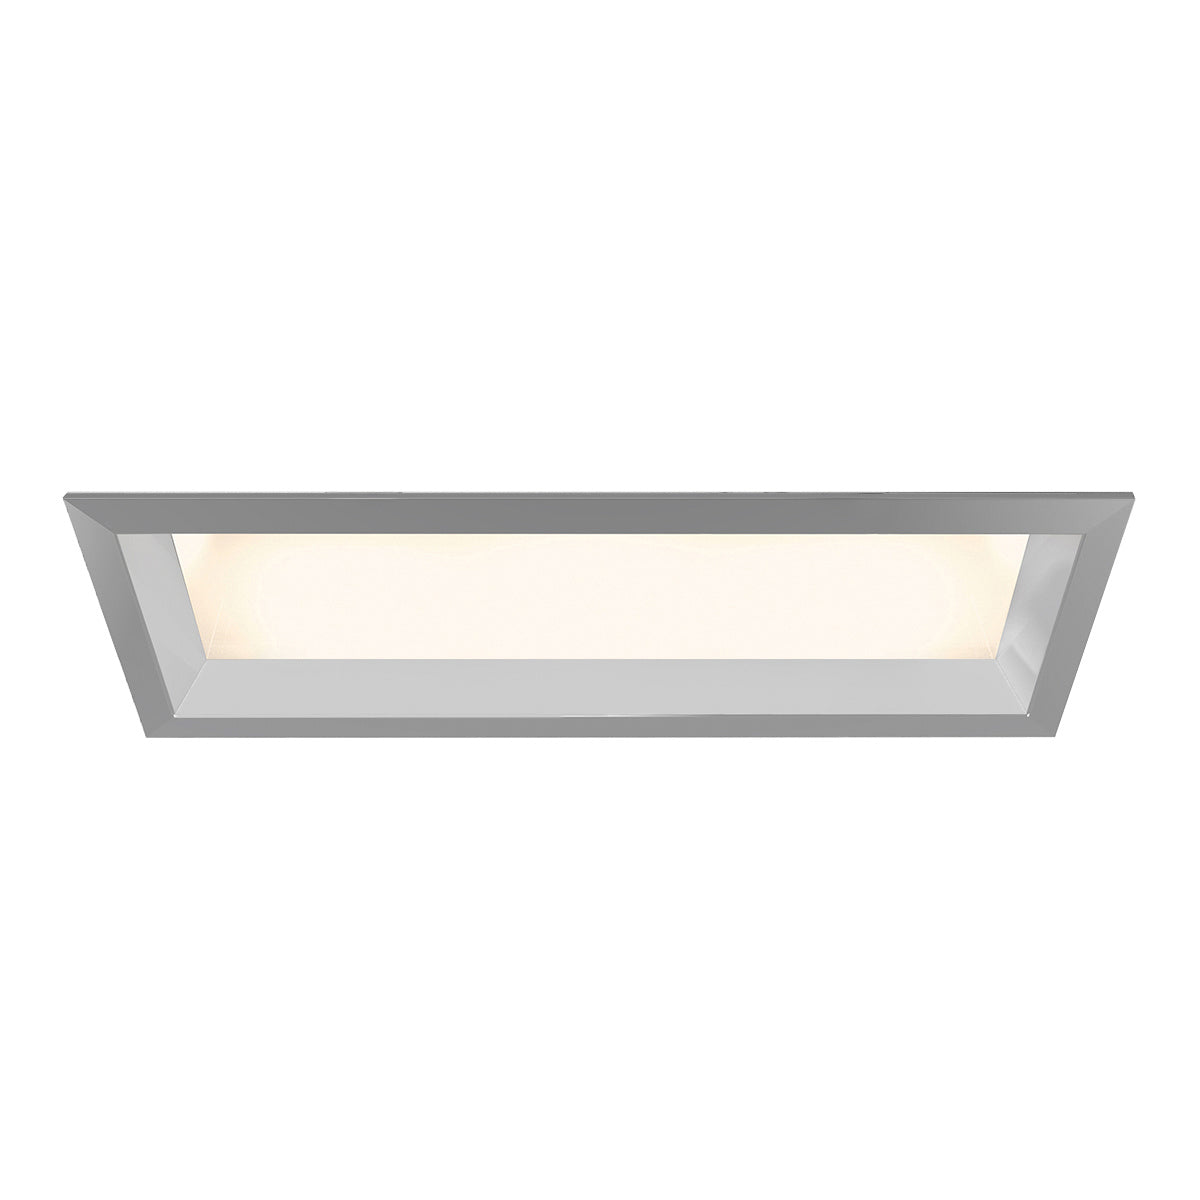 Eurofase Canada - Diffused Lens - Platinum- Union Lighting Luminaires Decor